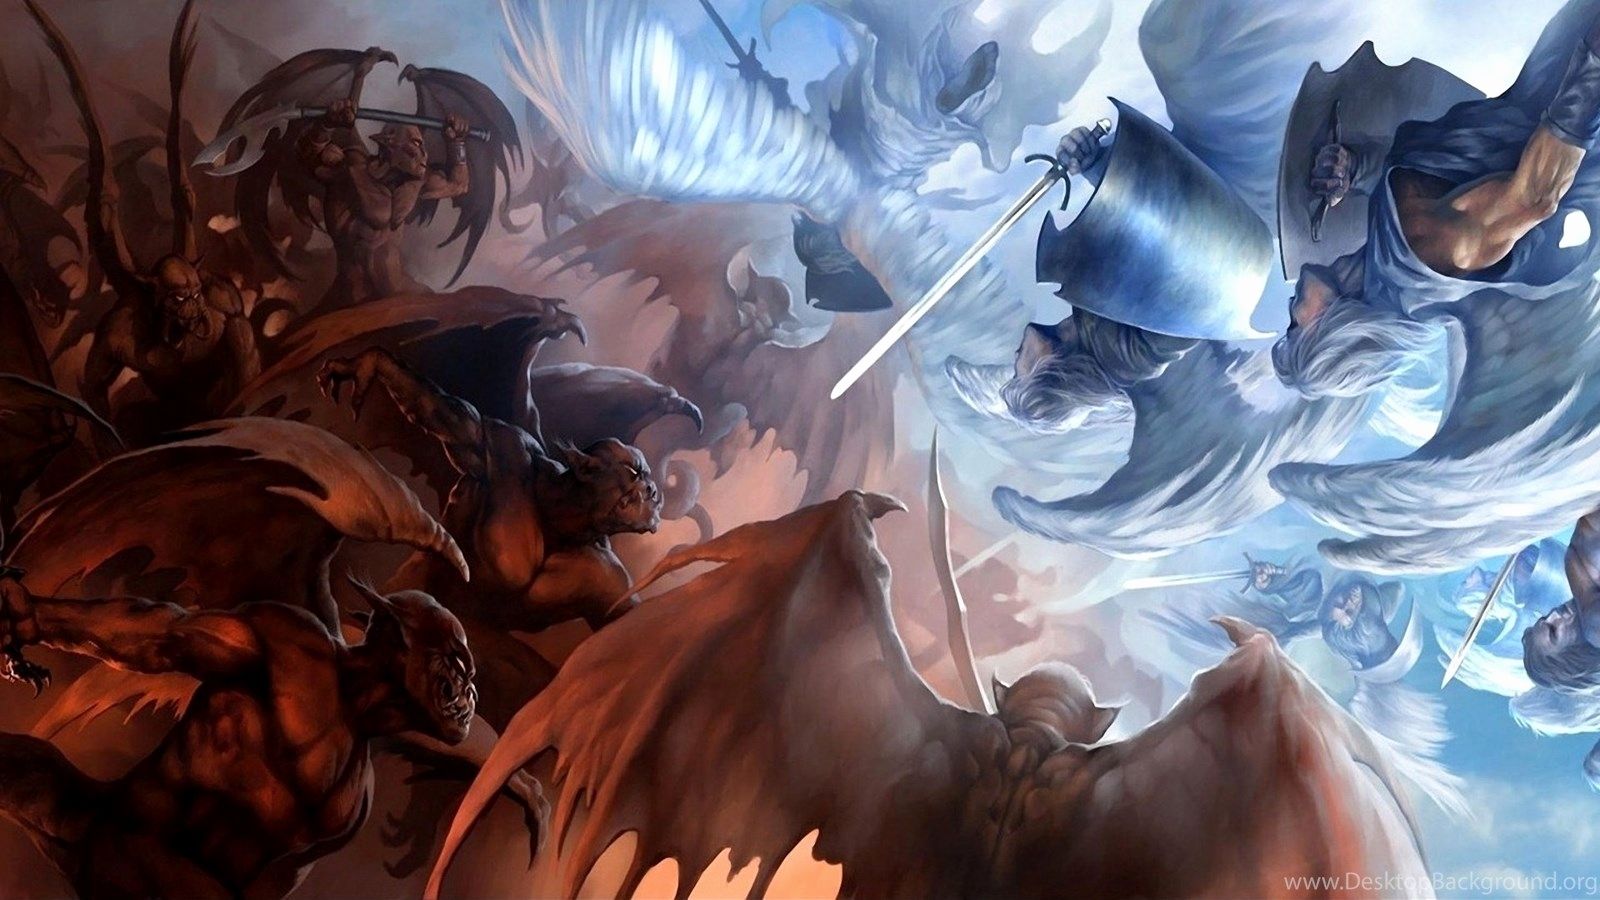 Image Of Anime Fight Best Of Wallpaper Demons Angels Vs Anime